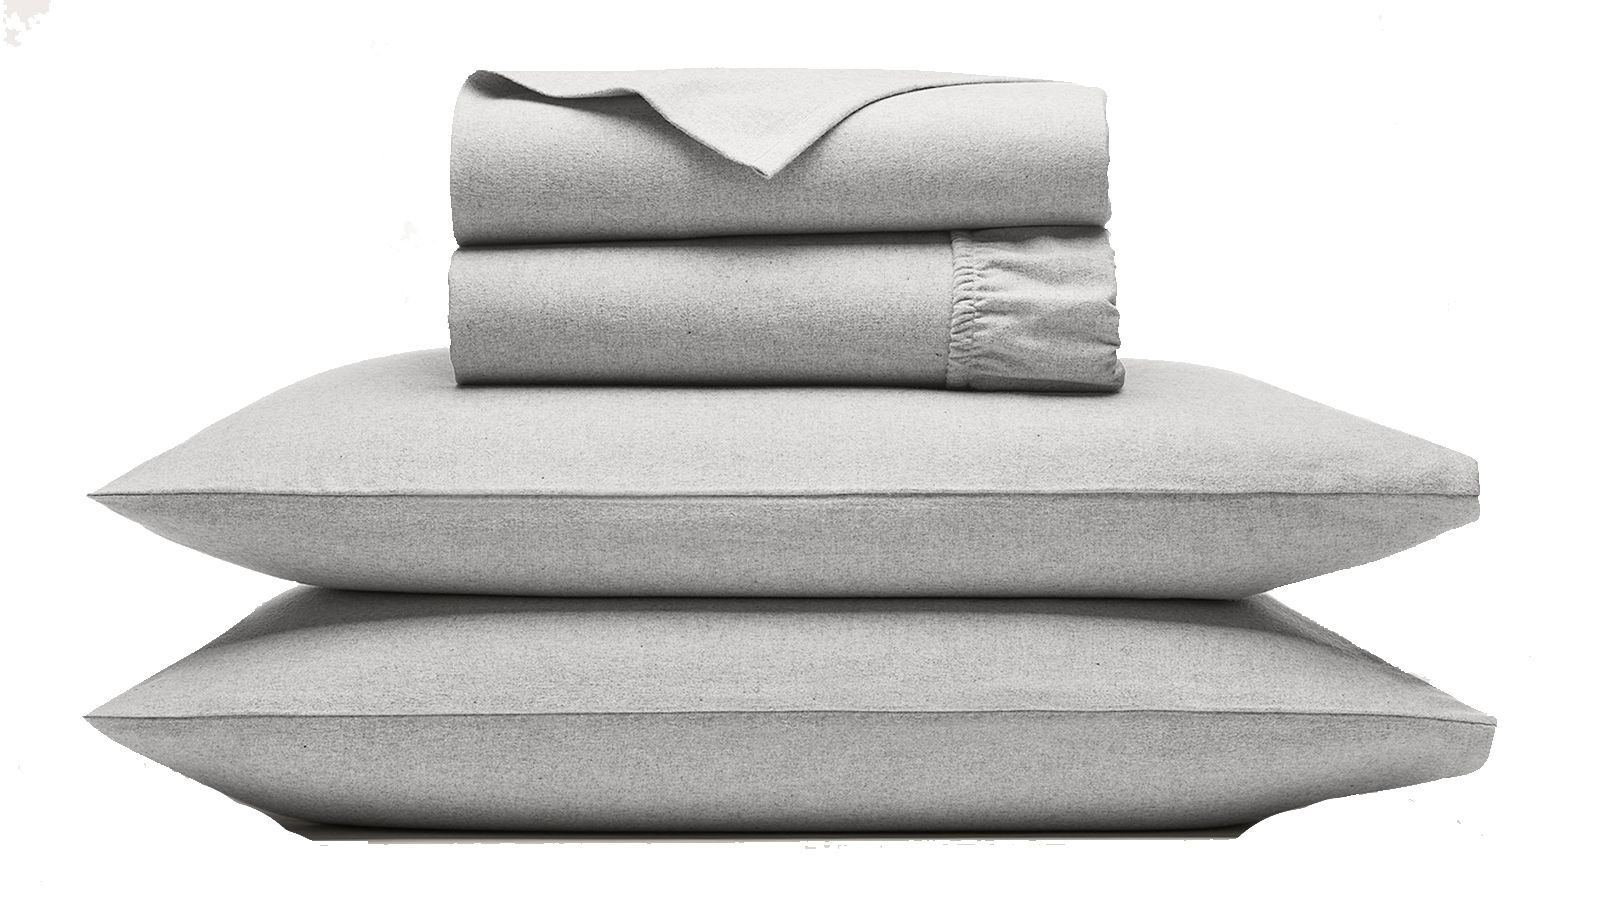 Classic Bath Towels - Pair – Linenbundle EU